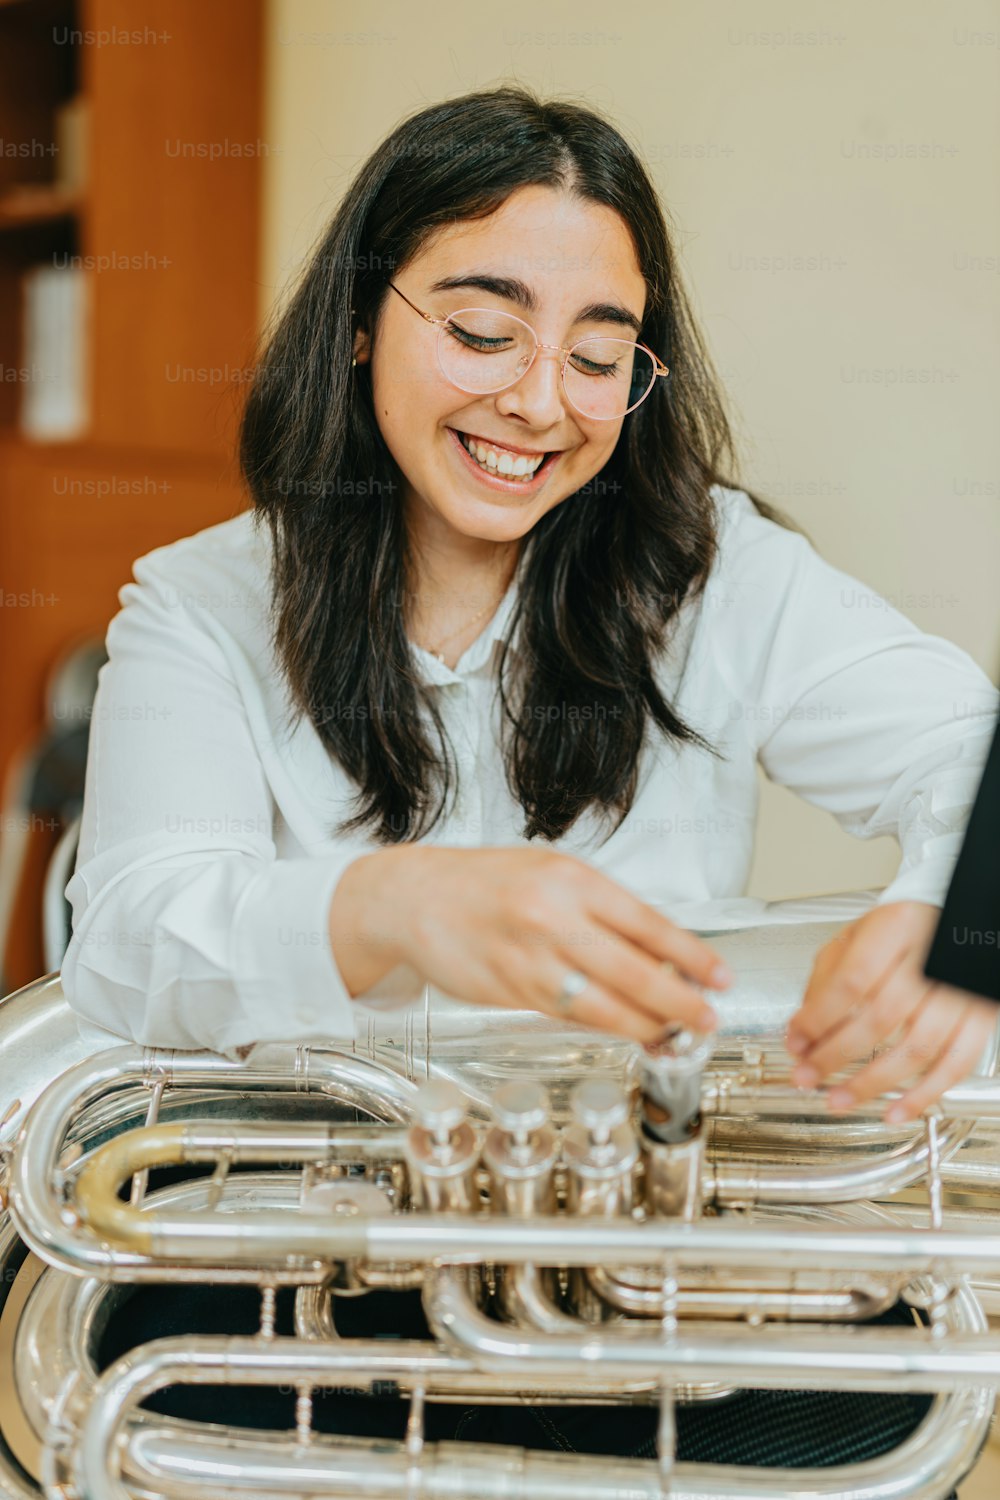 Una donna sorride mentre suona uno strumento musicale